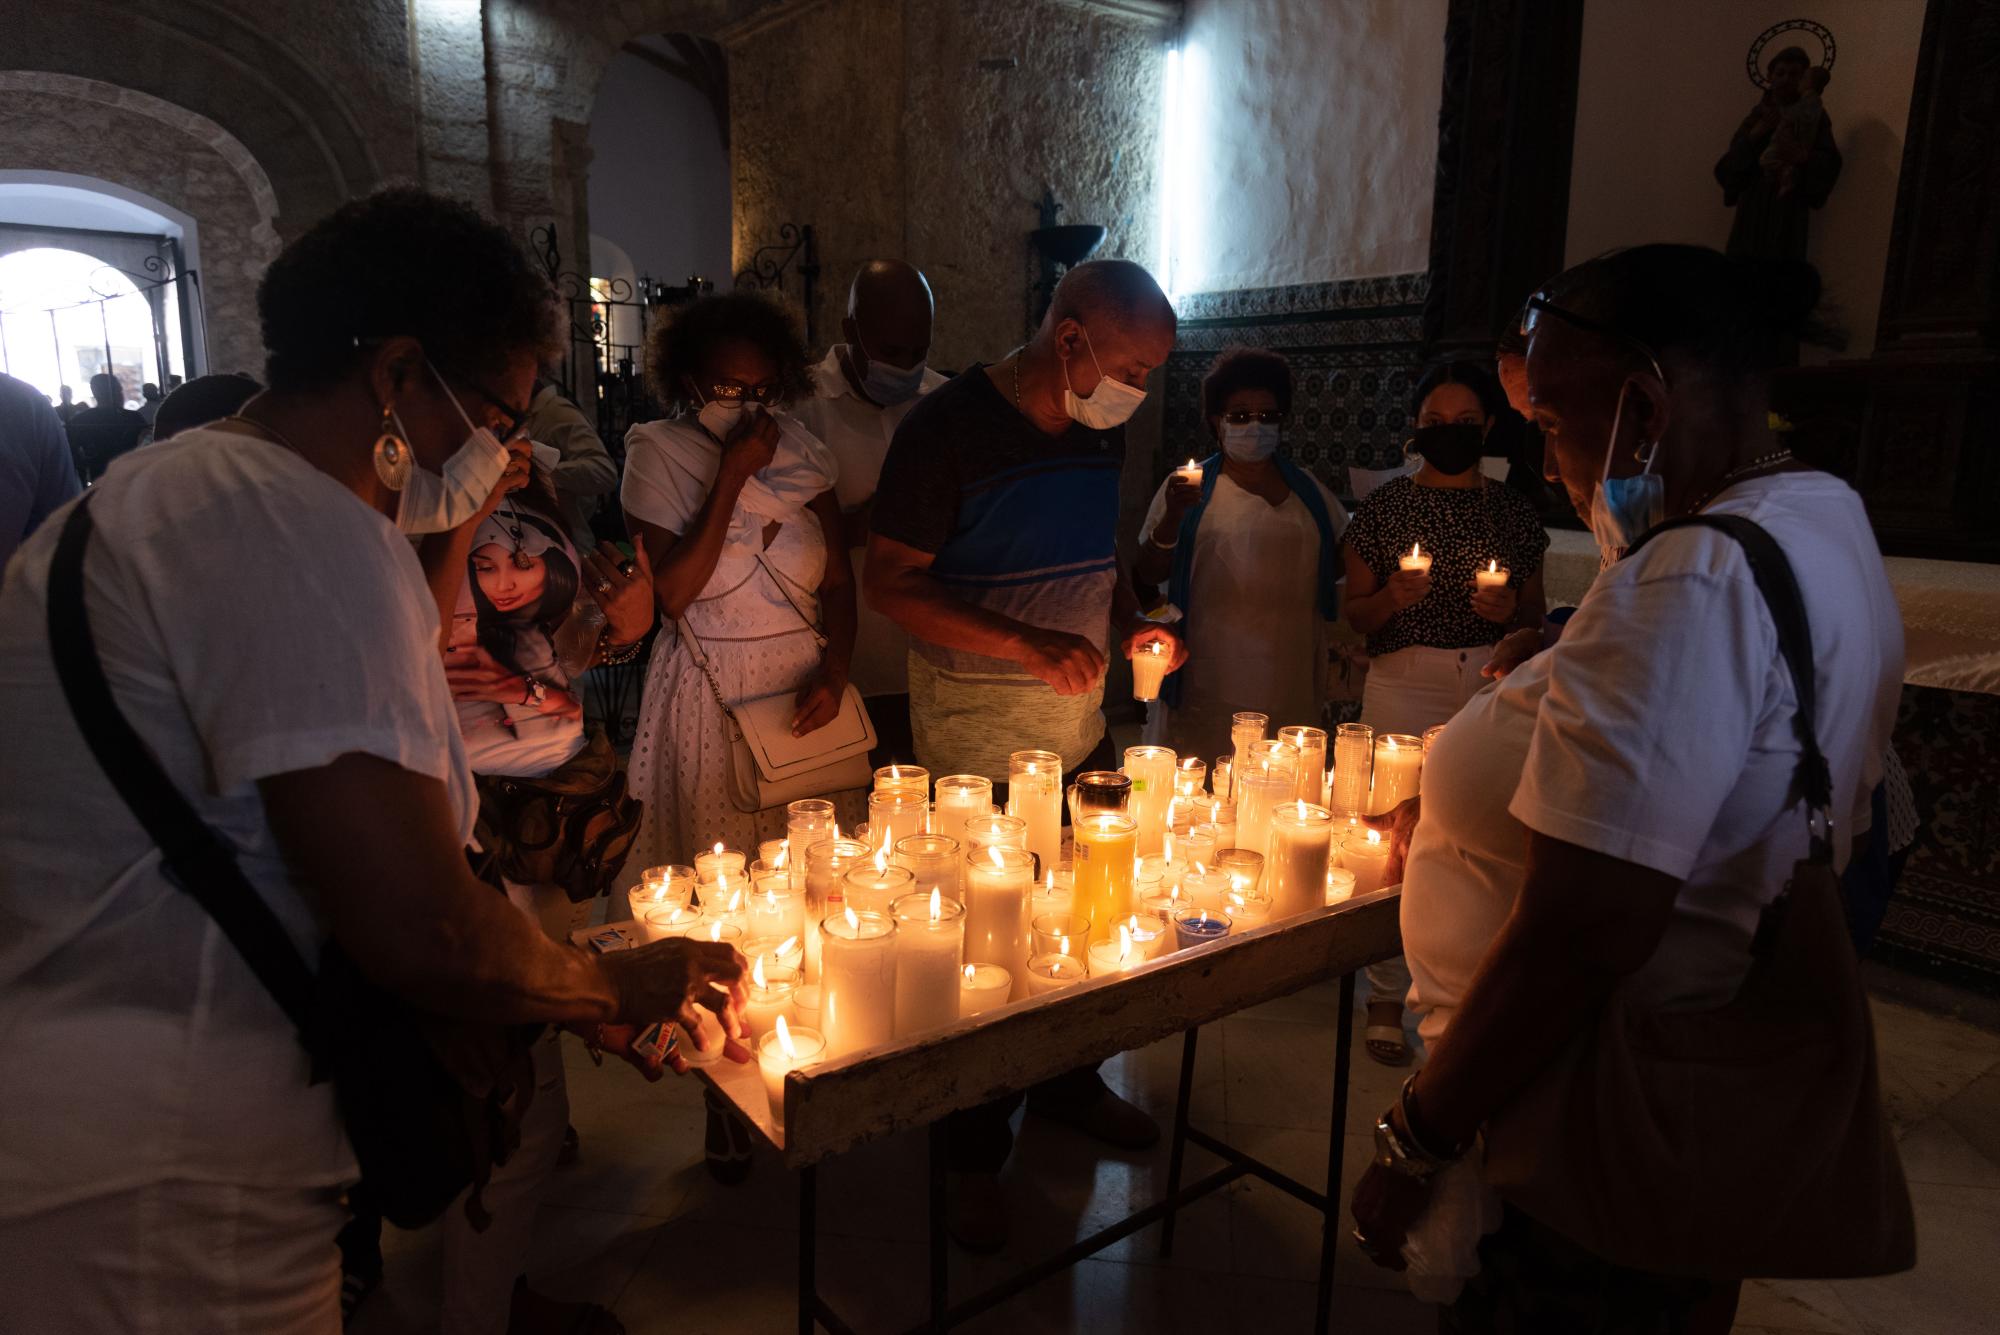 Las ofrendas, peticiones y oraciones no cesaron durante la celebración. (Foto: Pedro Bazil / Diario Libre)